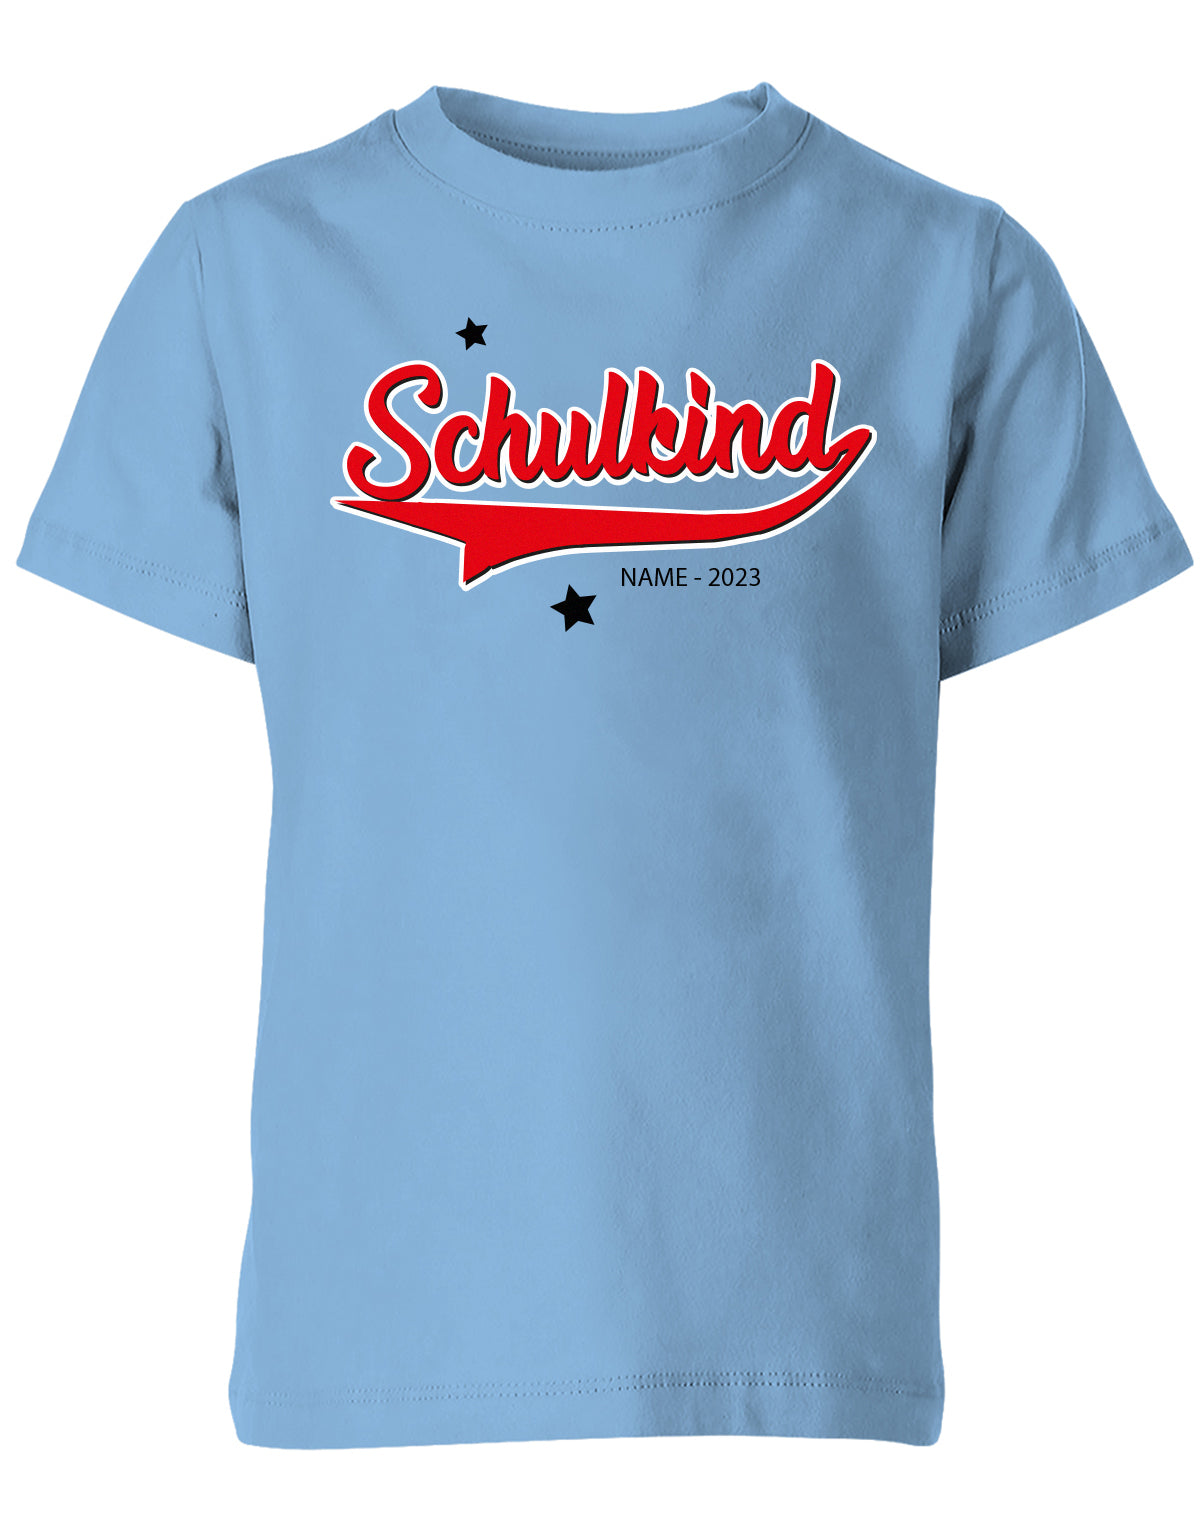 Schulkind 2023 - Collage Style - Einschulung 1. Klasse - Kinder T-Shirt Hellblau